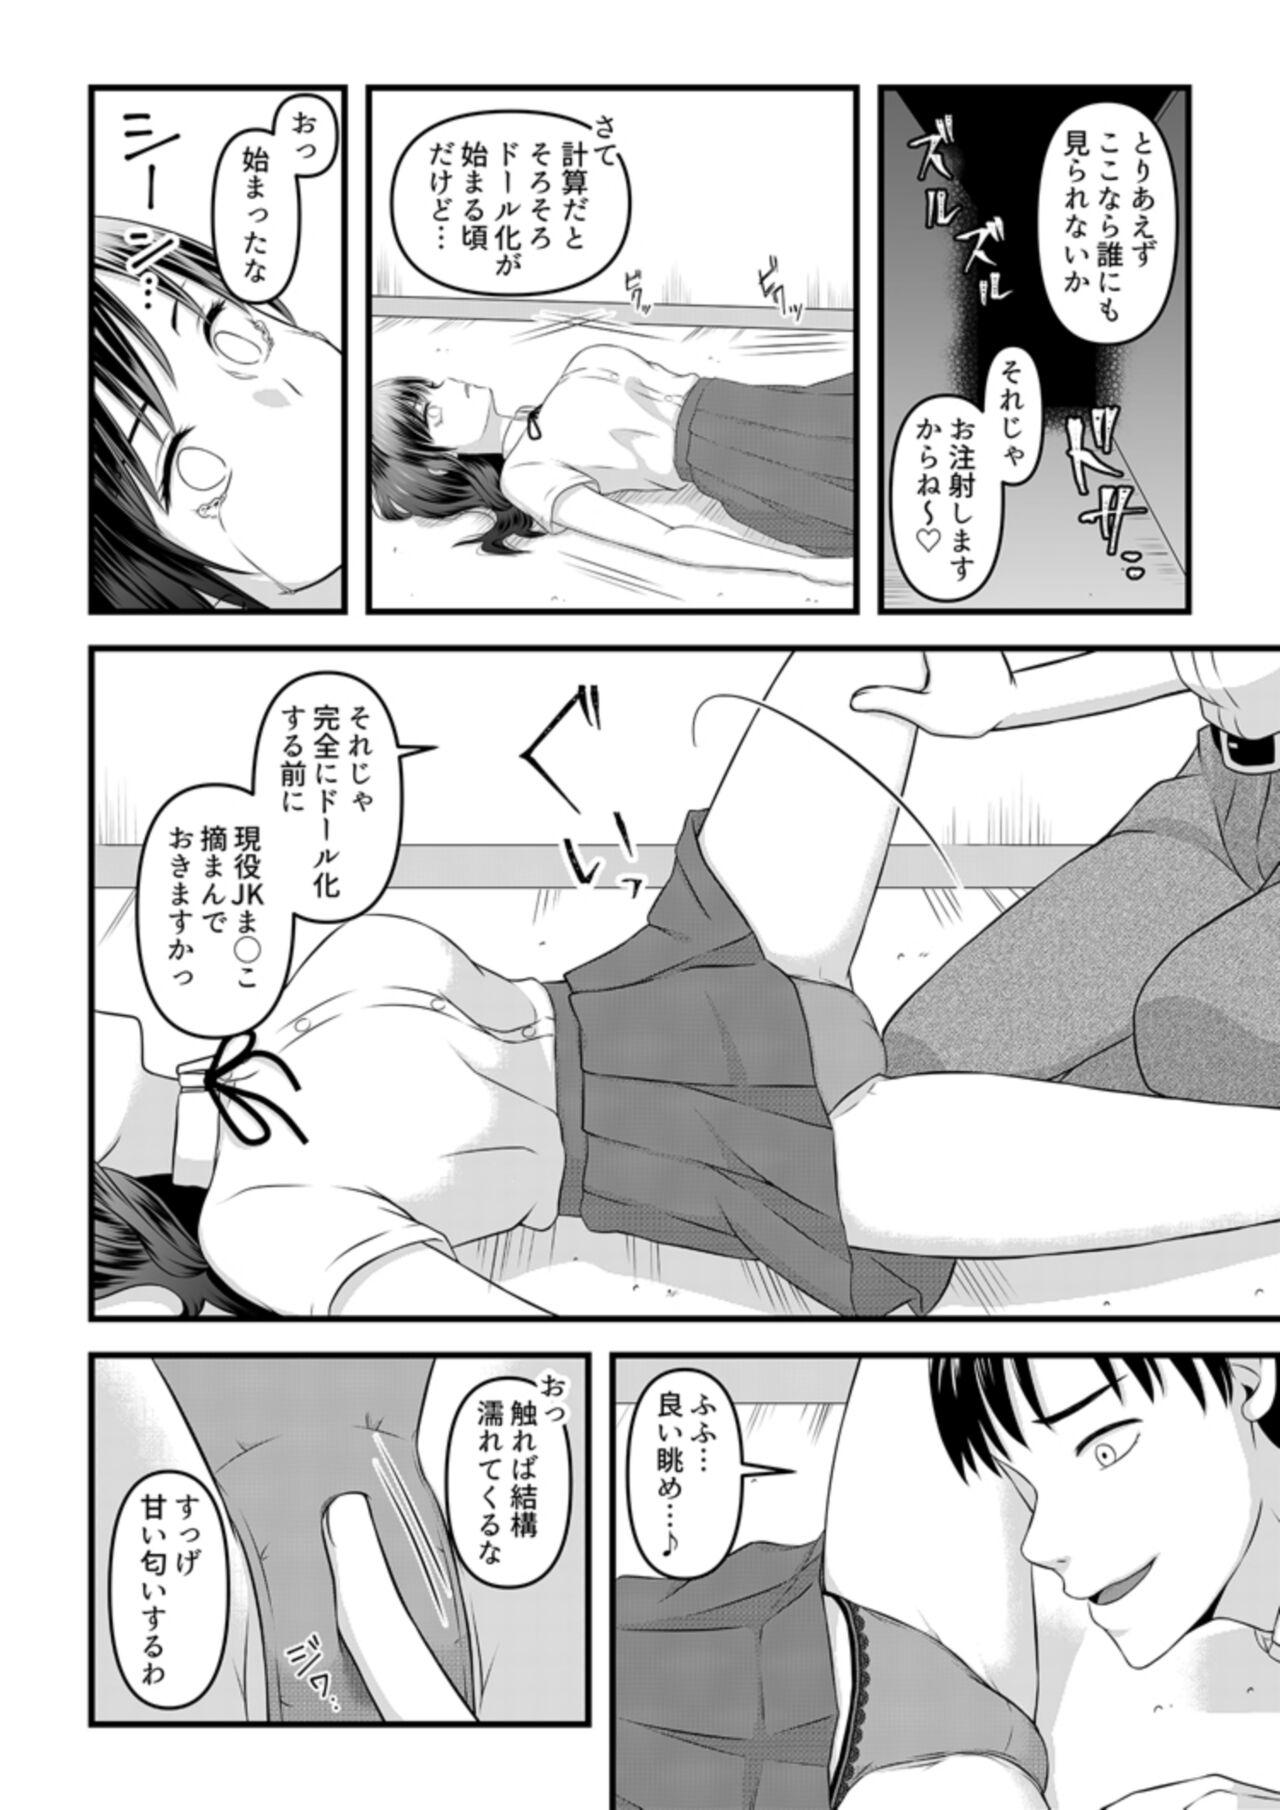 Shorts Himitsu no Rental Doll 1 - Original Teens - Page 2